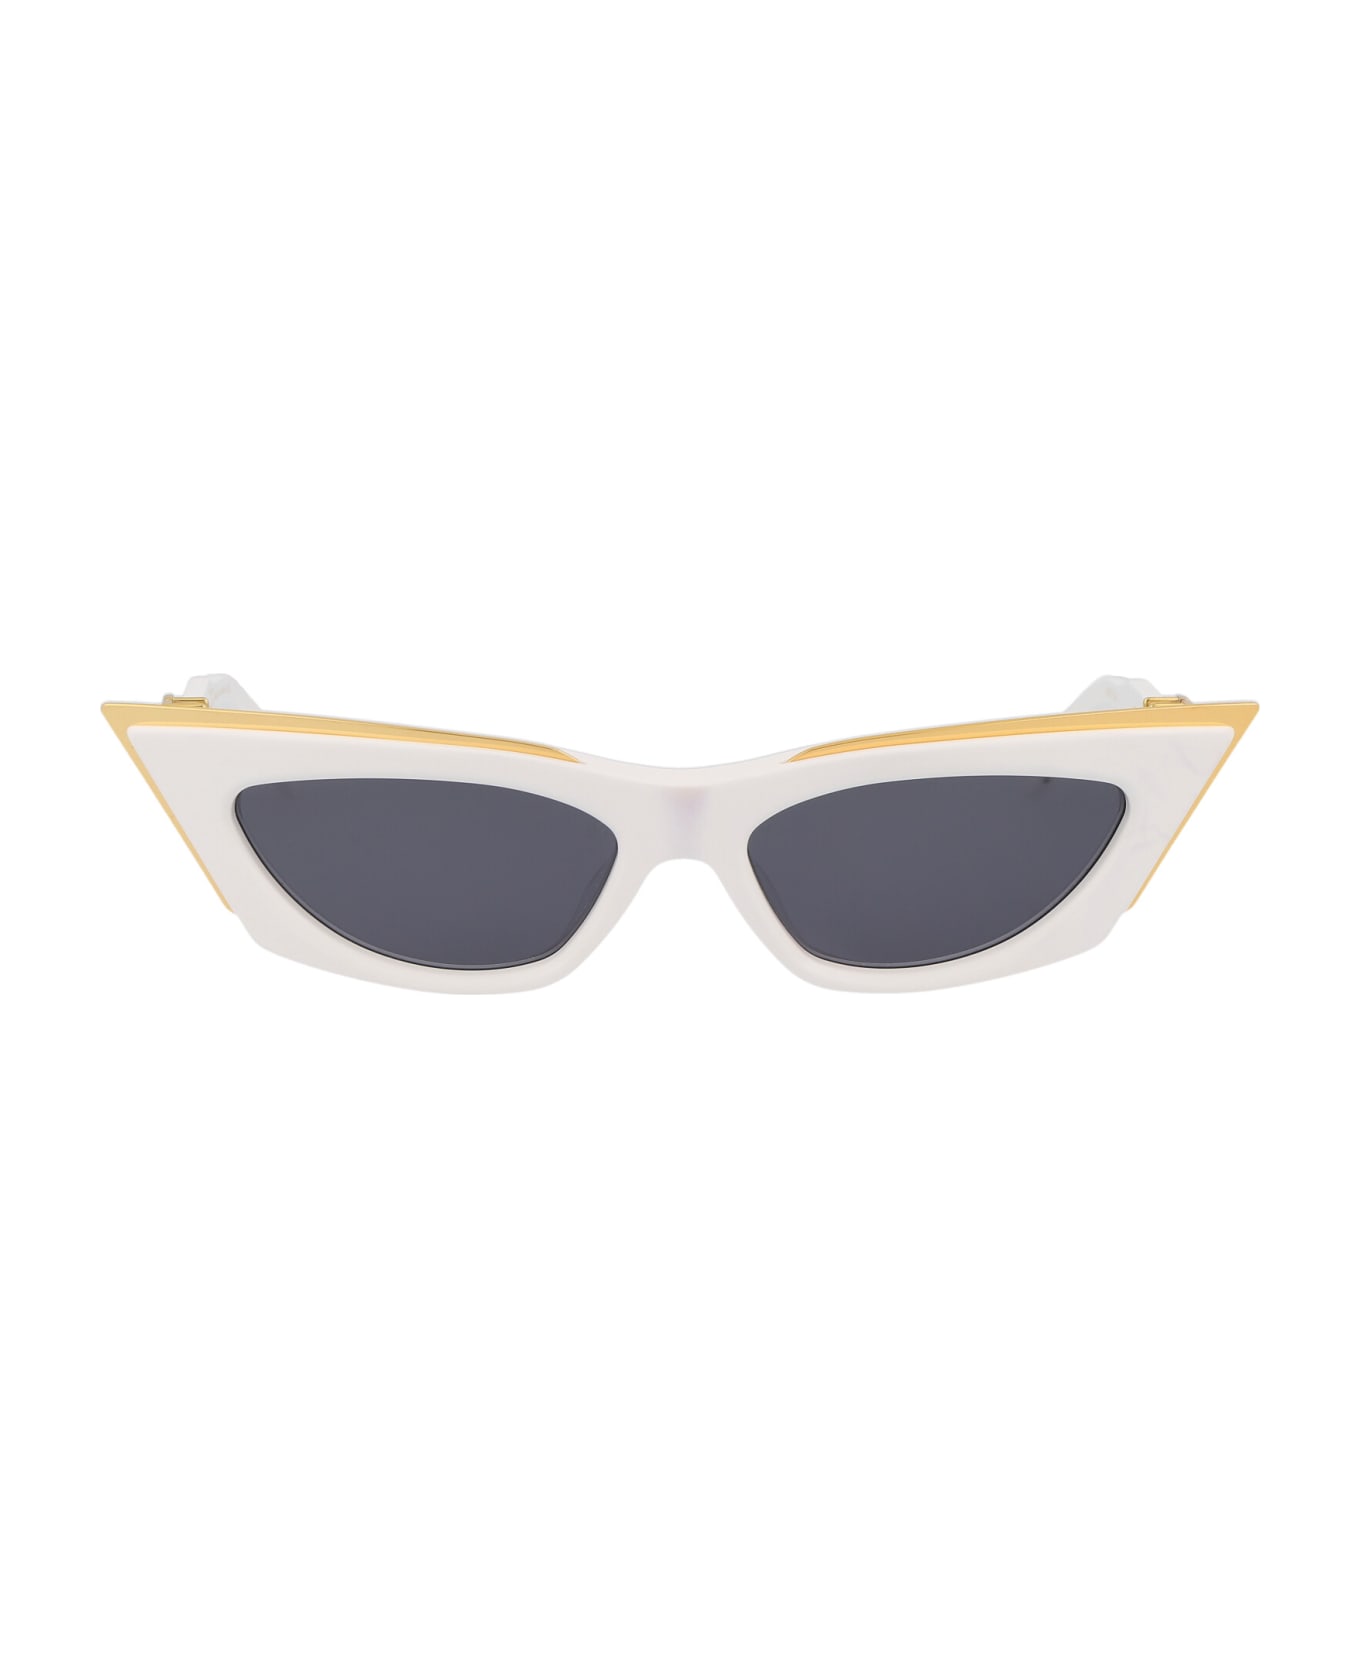 Valentino Eyewear V - Goldcut - I Sunglasses - White - Yellow Gold w/Dark Grey